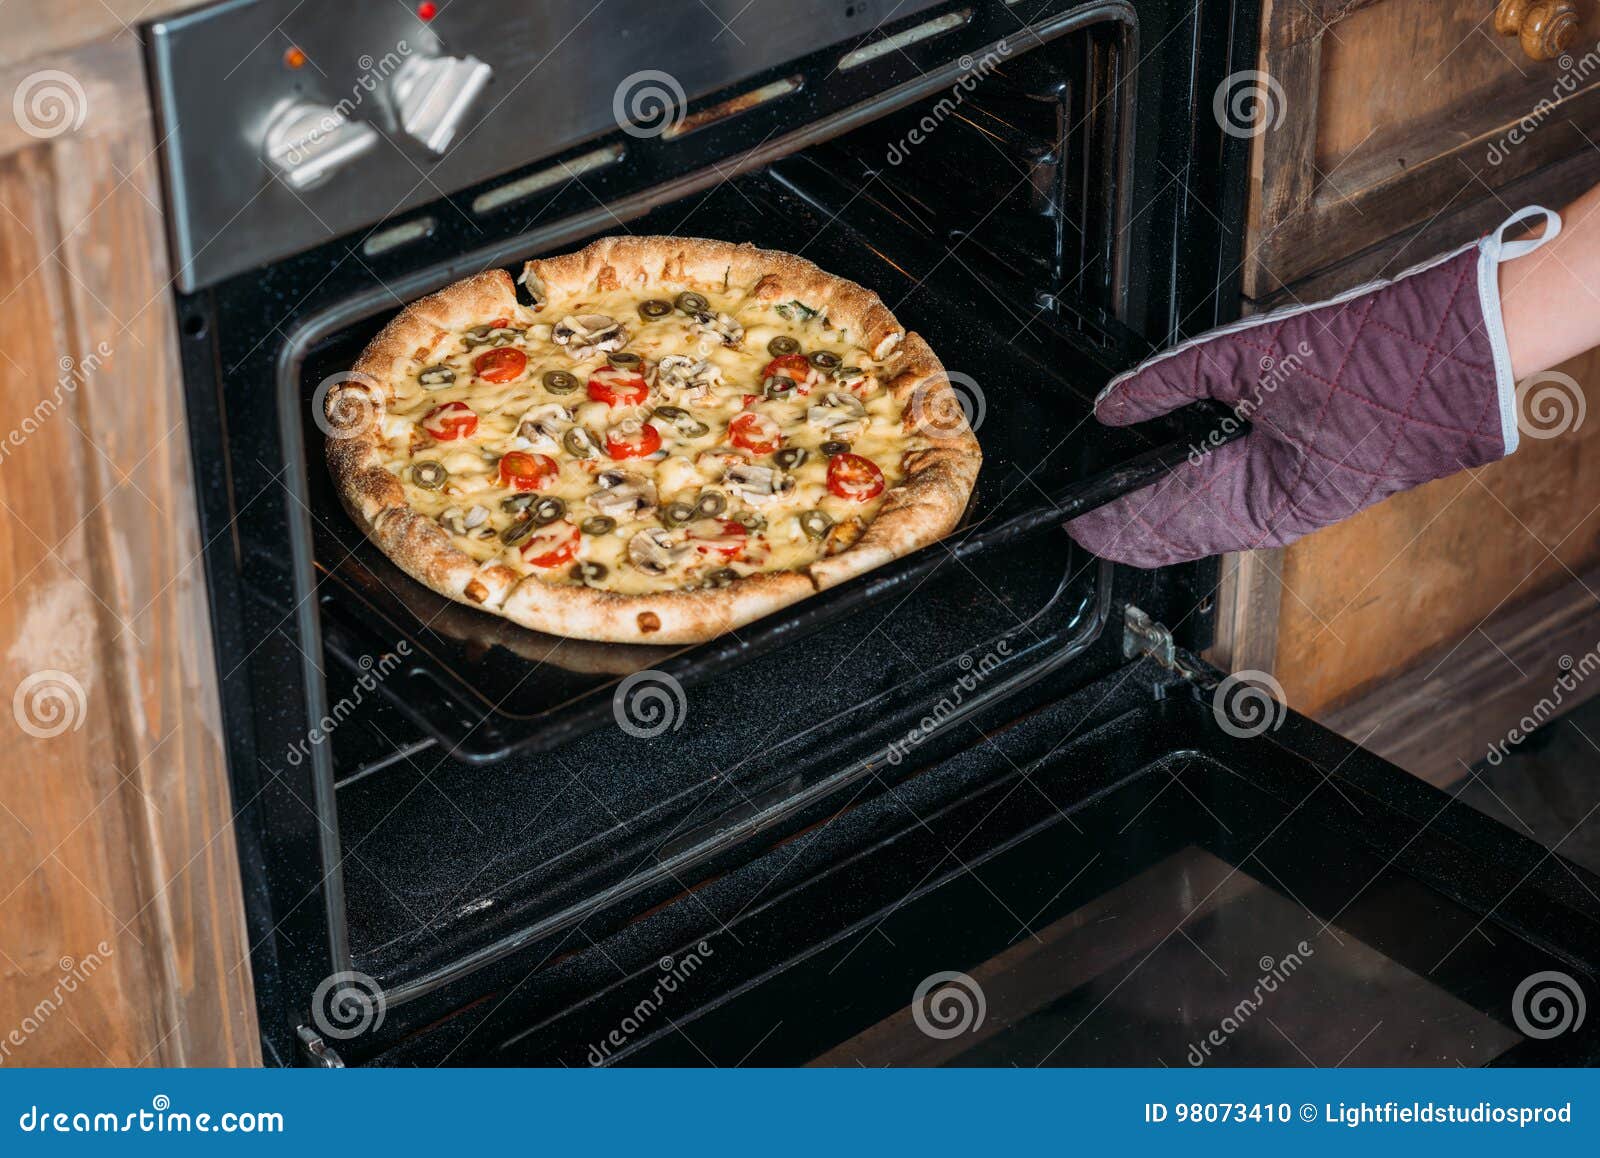 что такое функция пиццы в духовке фото 22